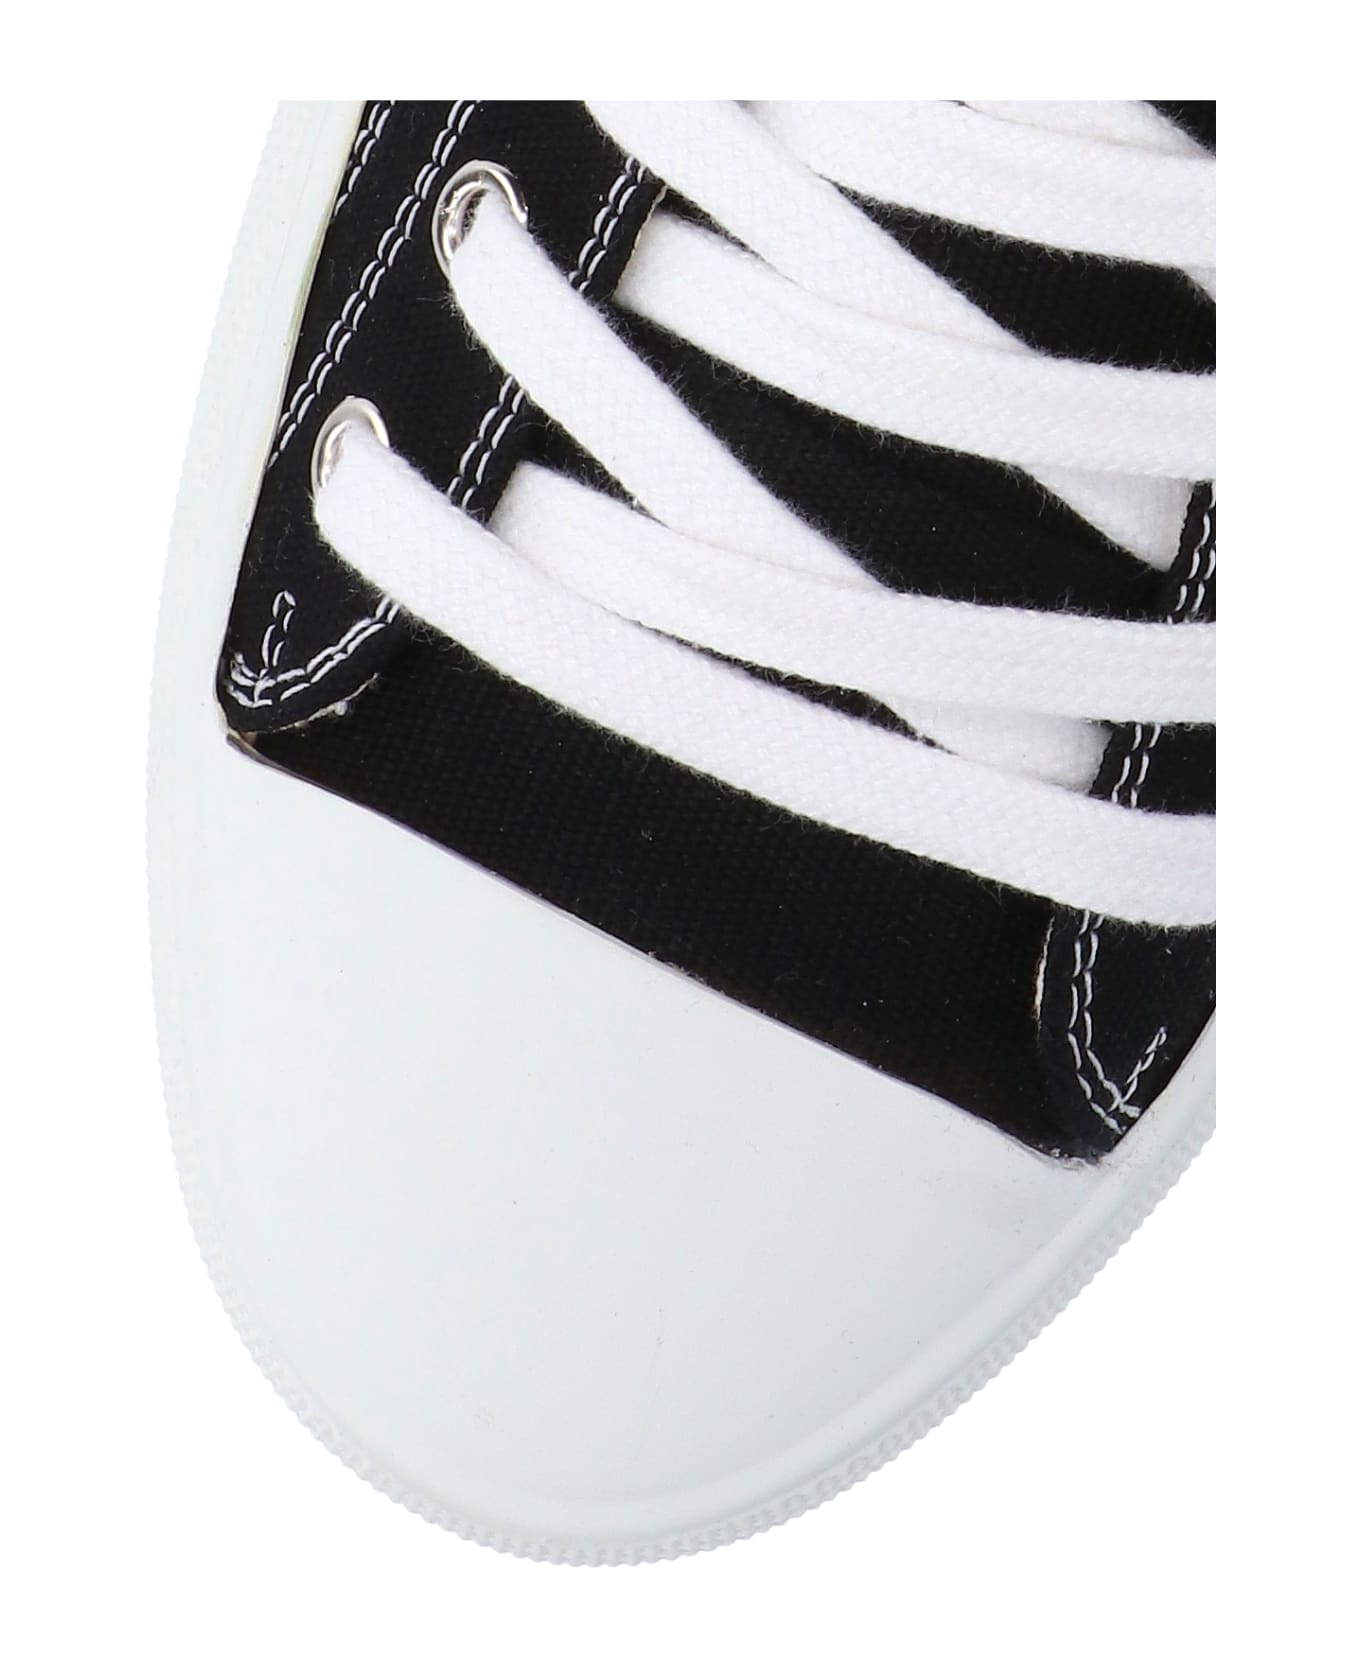 Vivienne Westwood 'plimsoll' Low Top Sneakers - Black   スニーカー